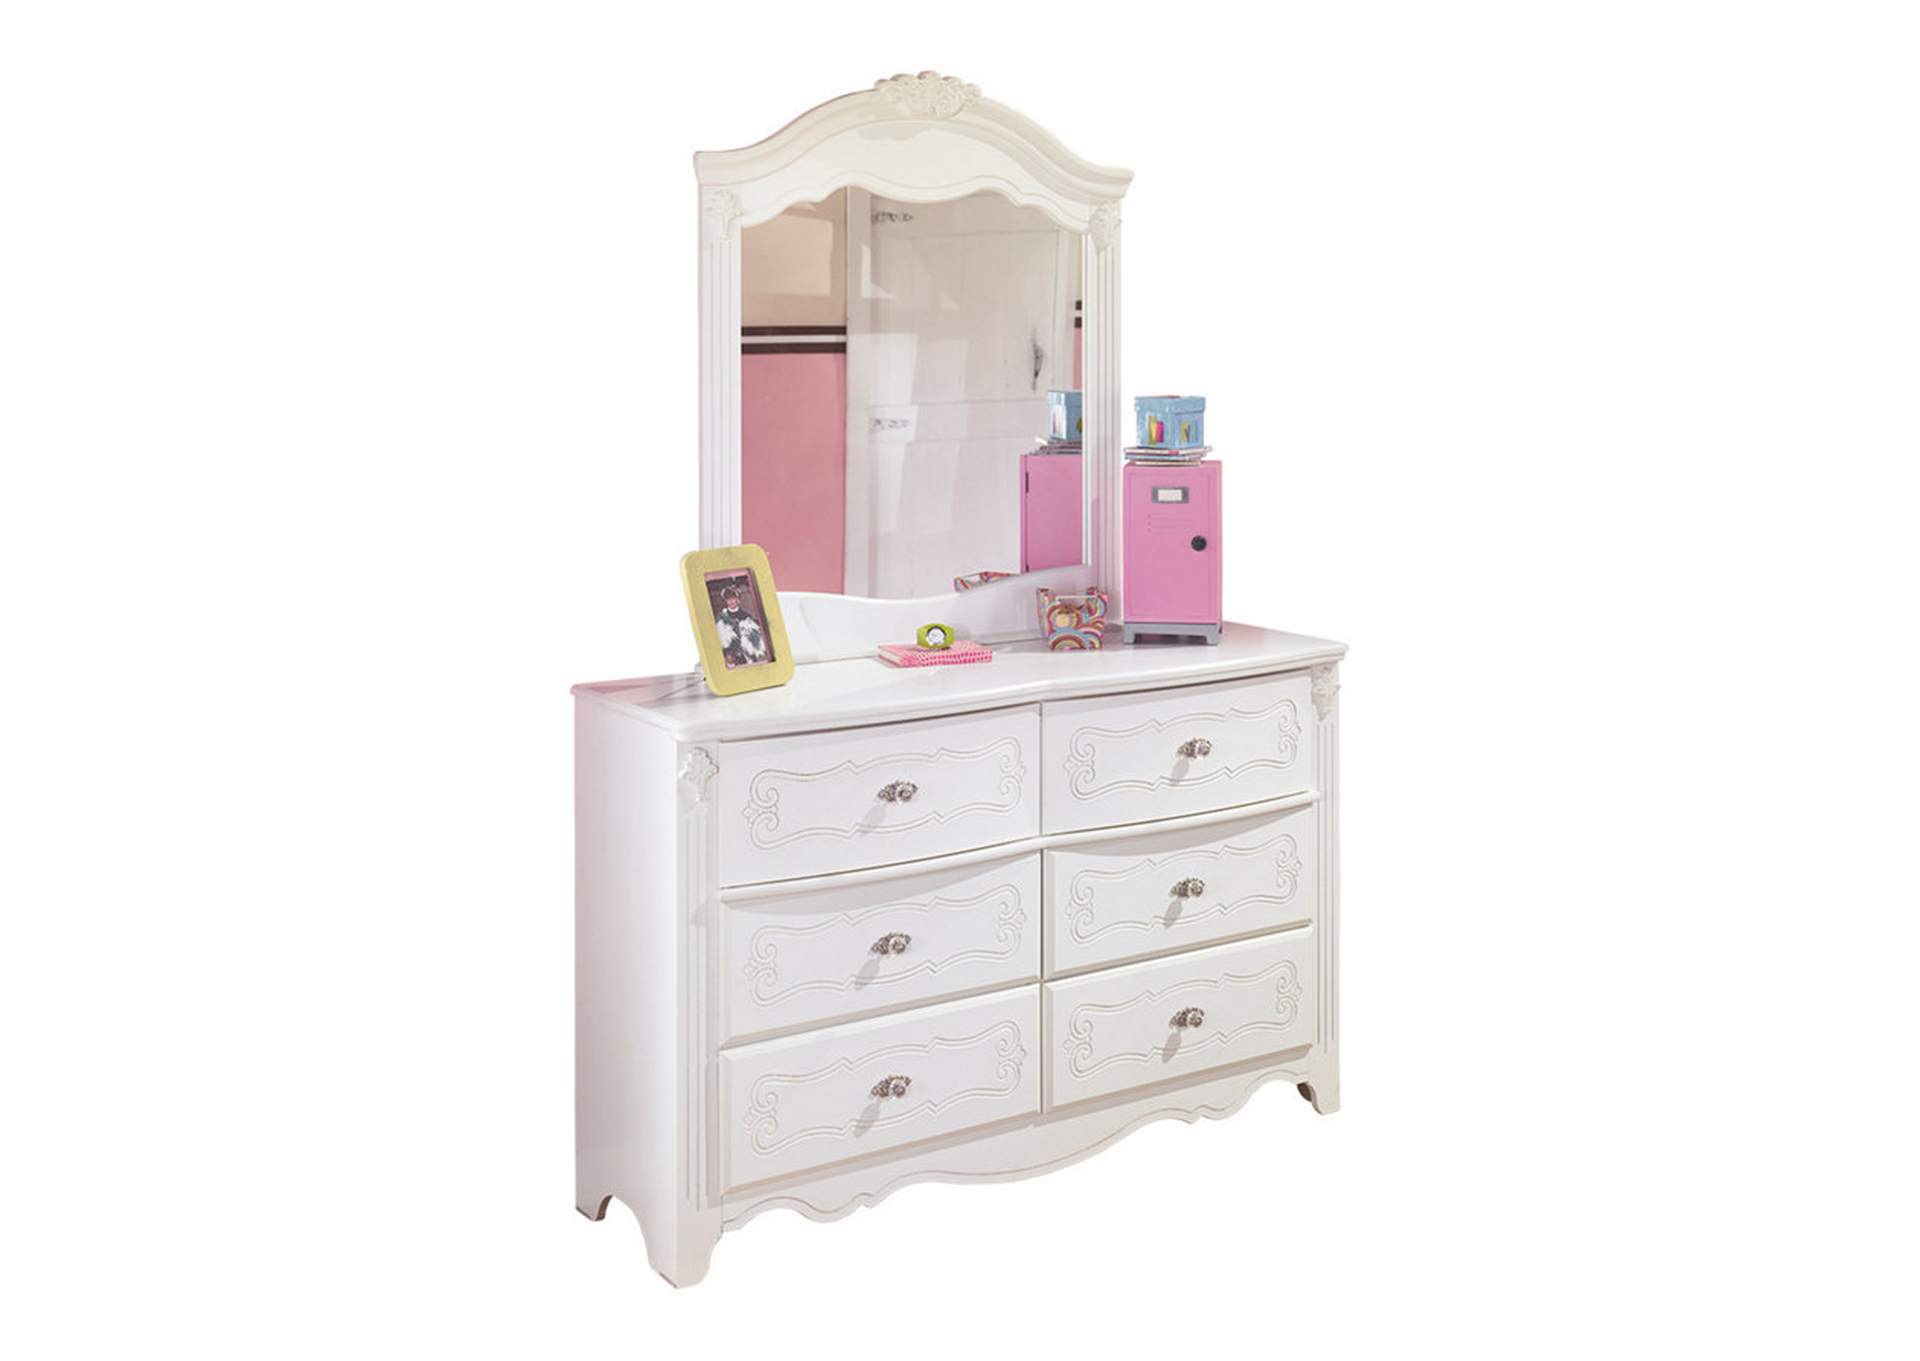 White Exquisite Dresser And Mirror Star, Dresser White With Mirror